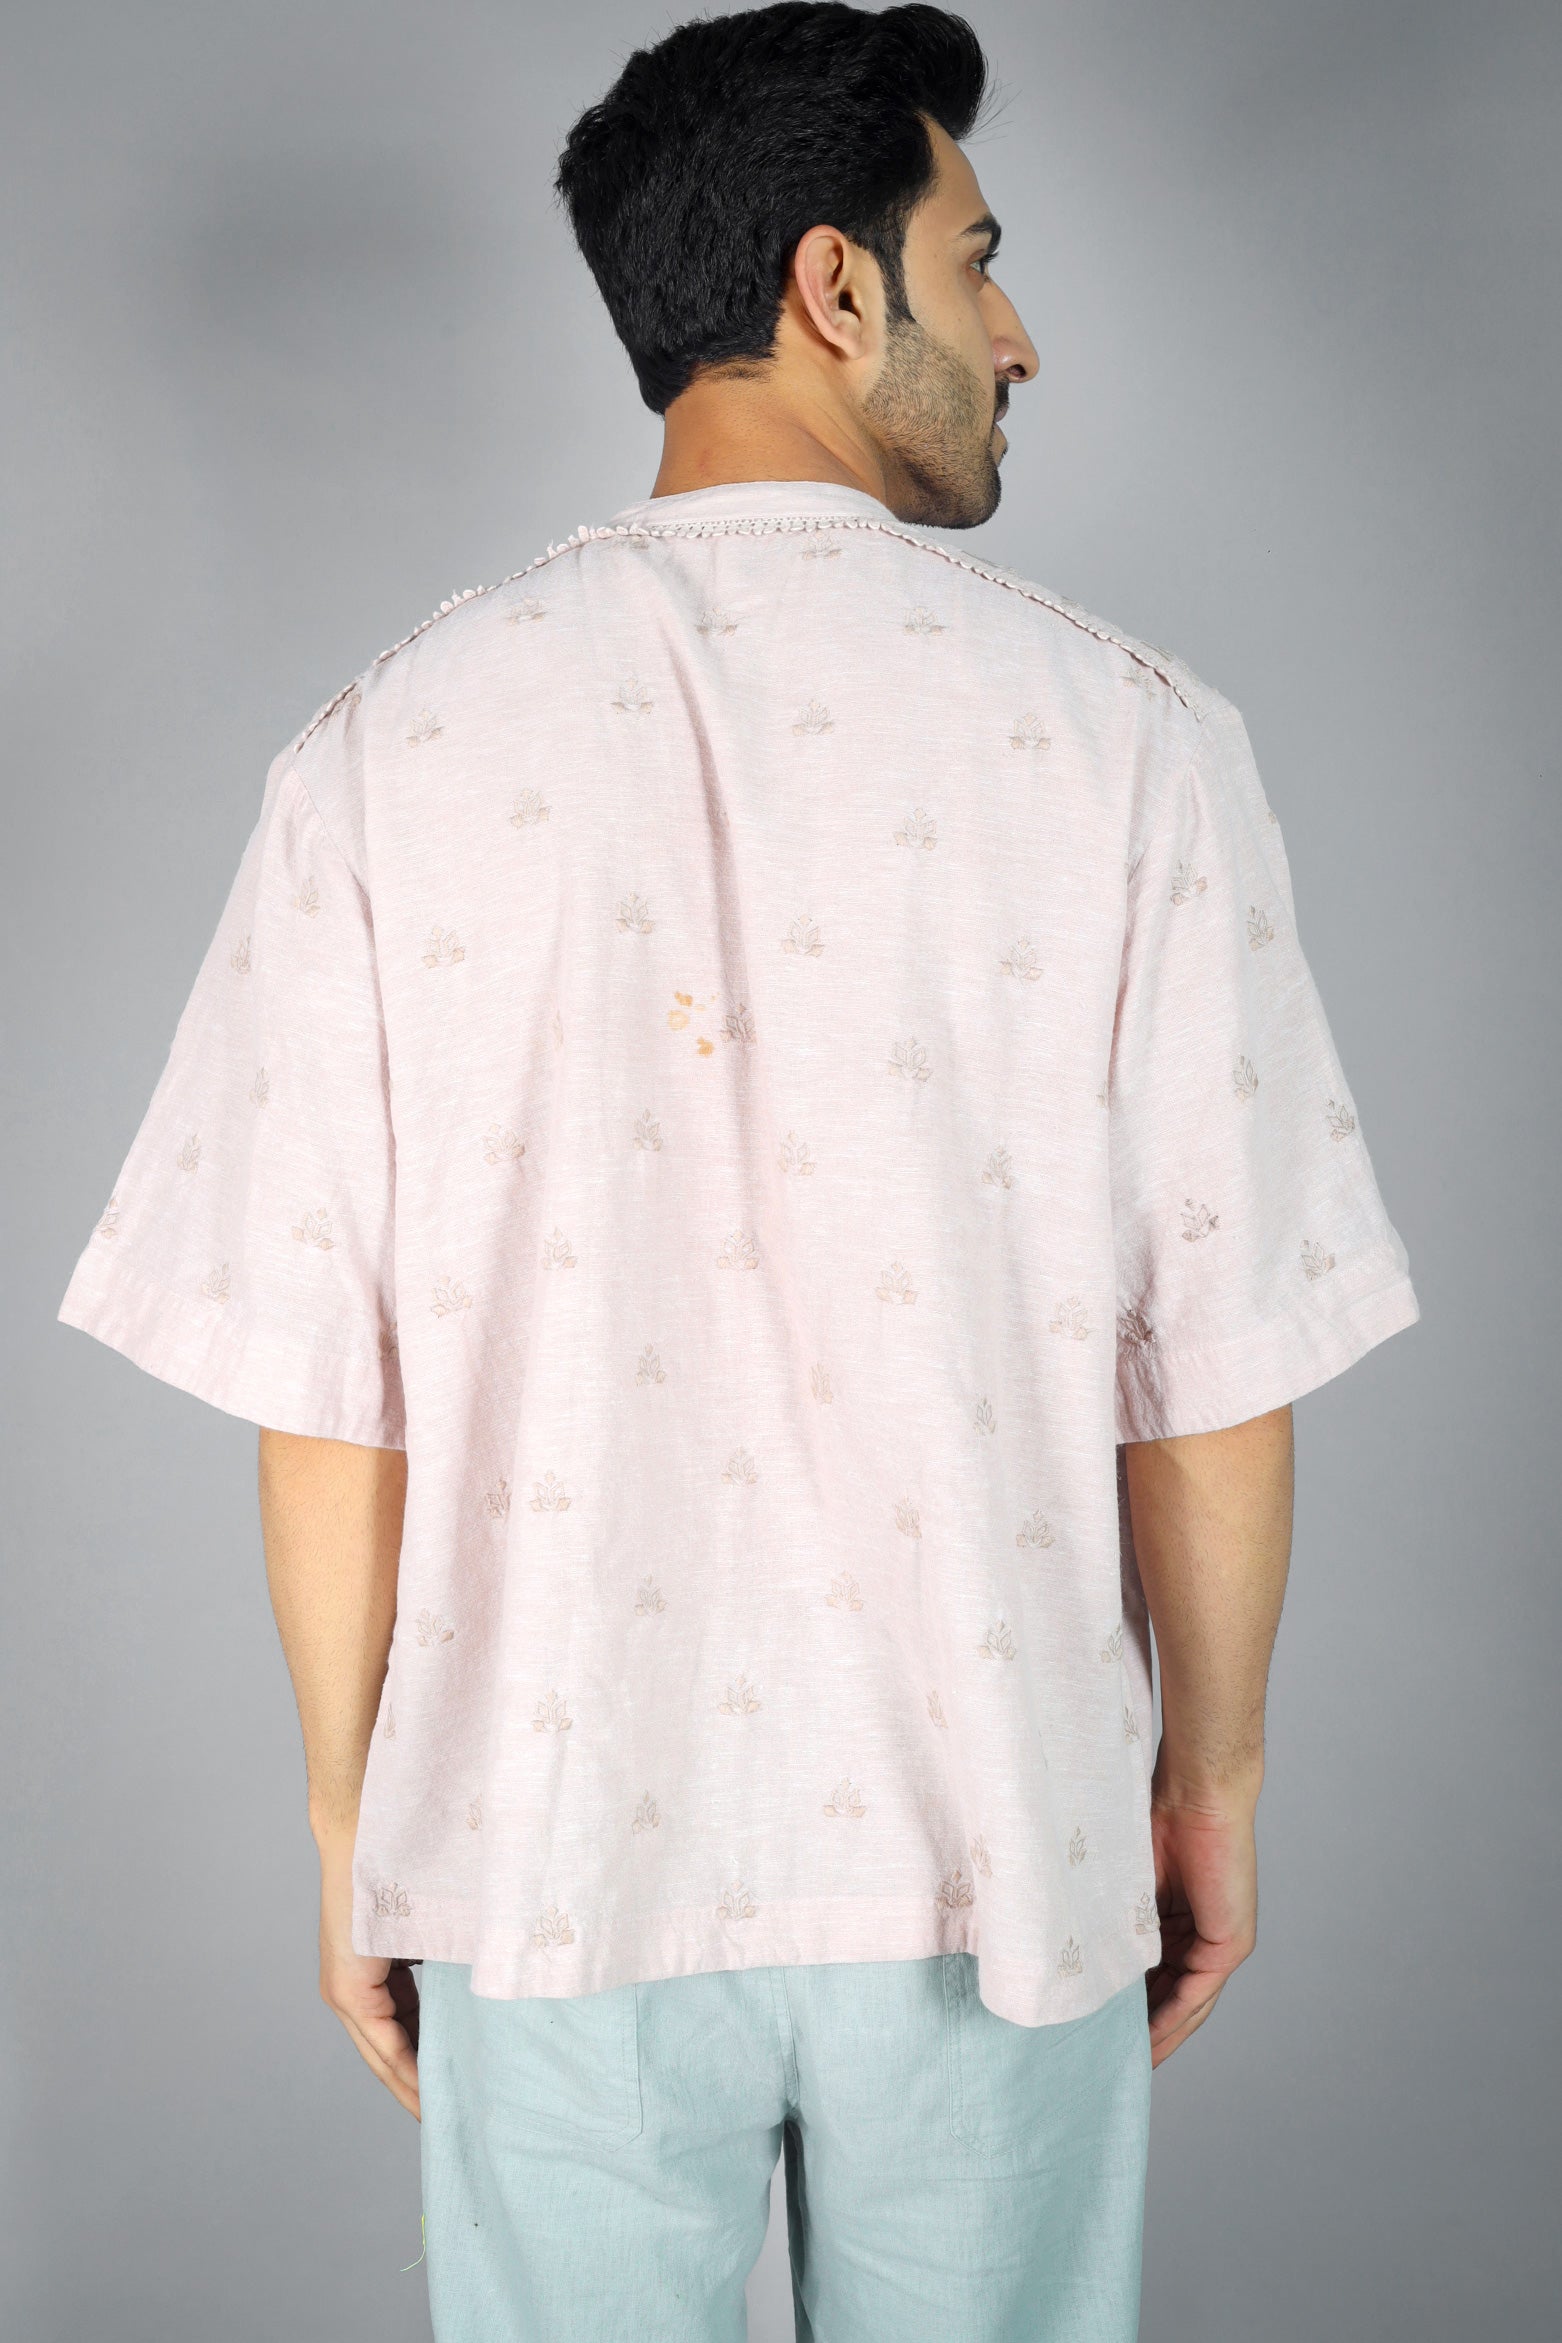 Dexter Men's Cutwork Embroidered Shirt